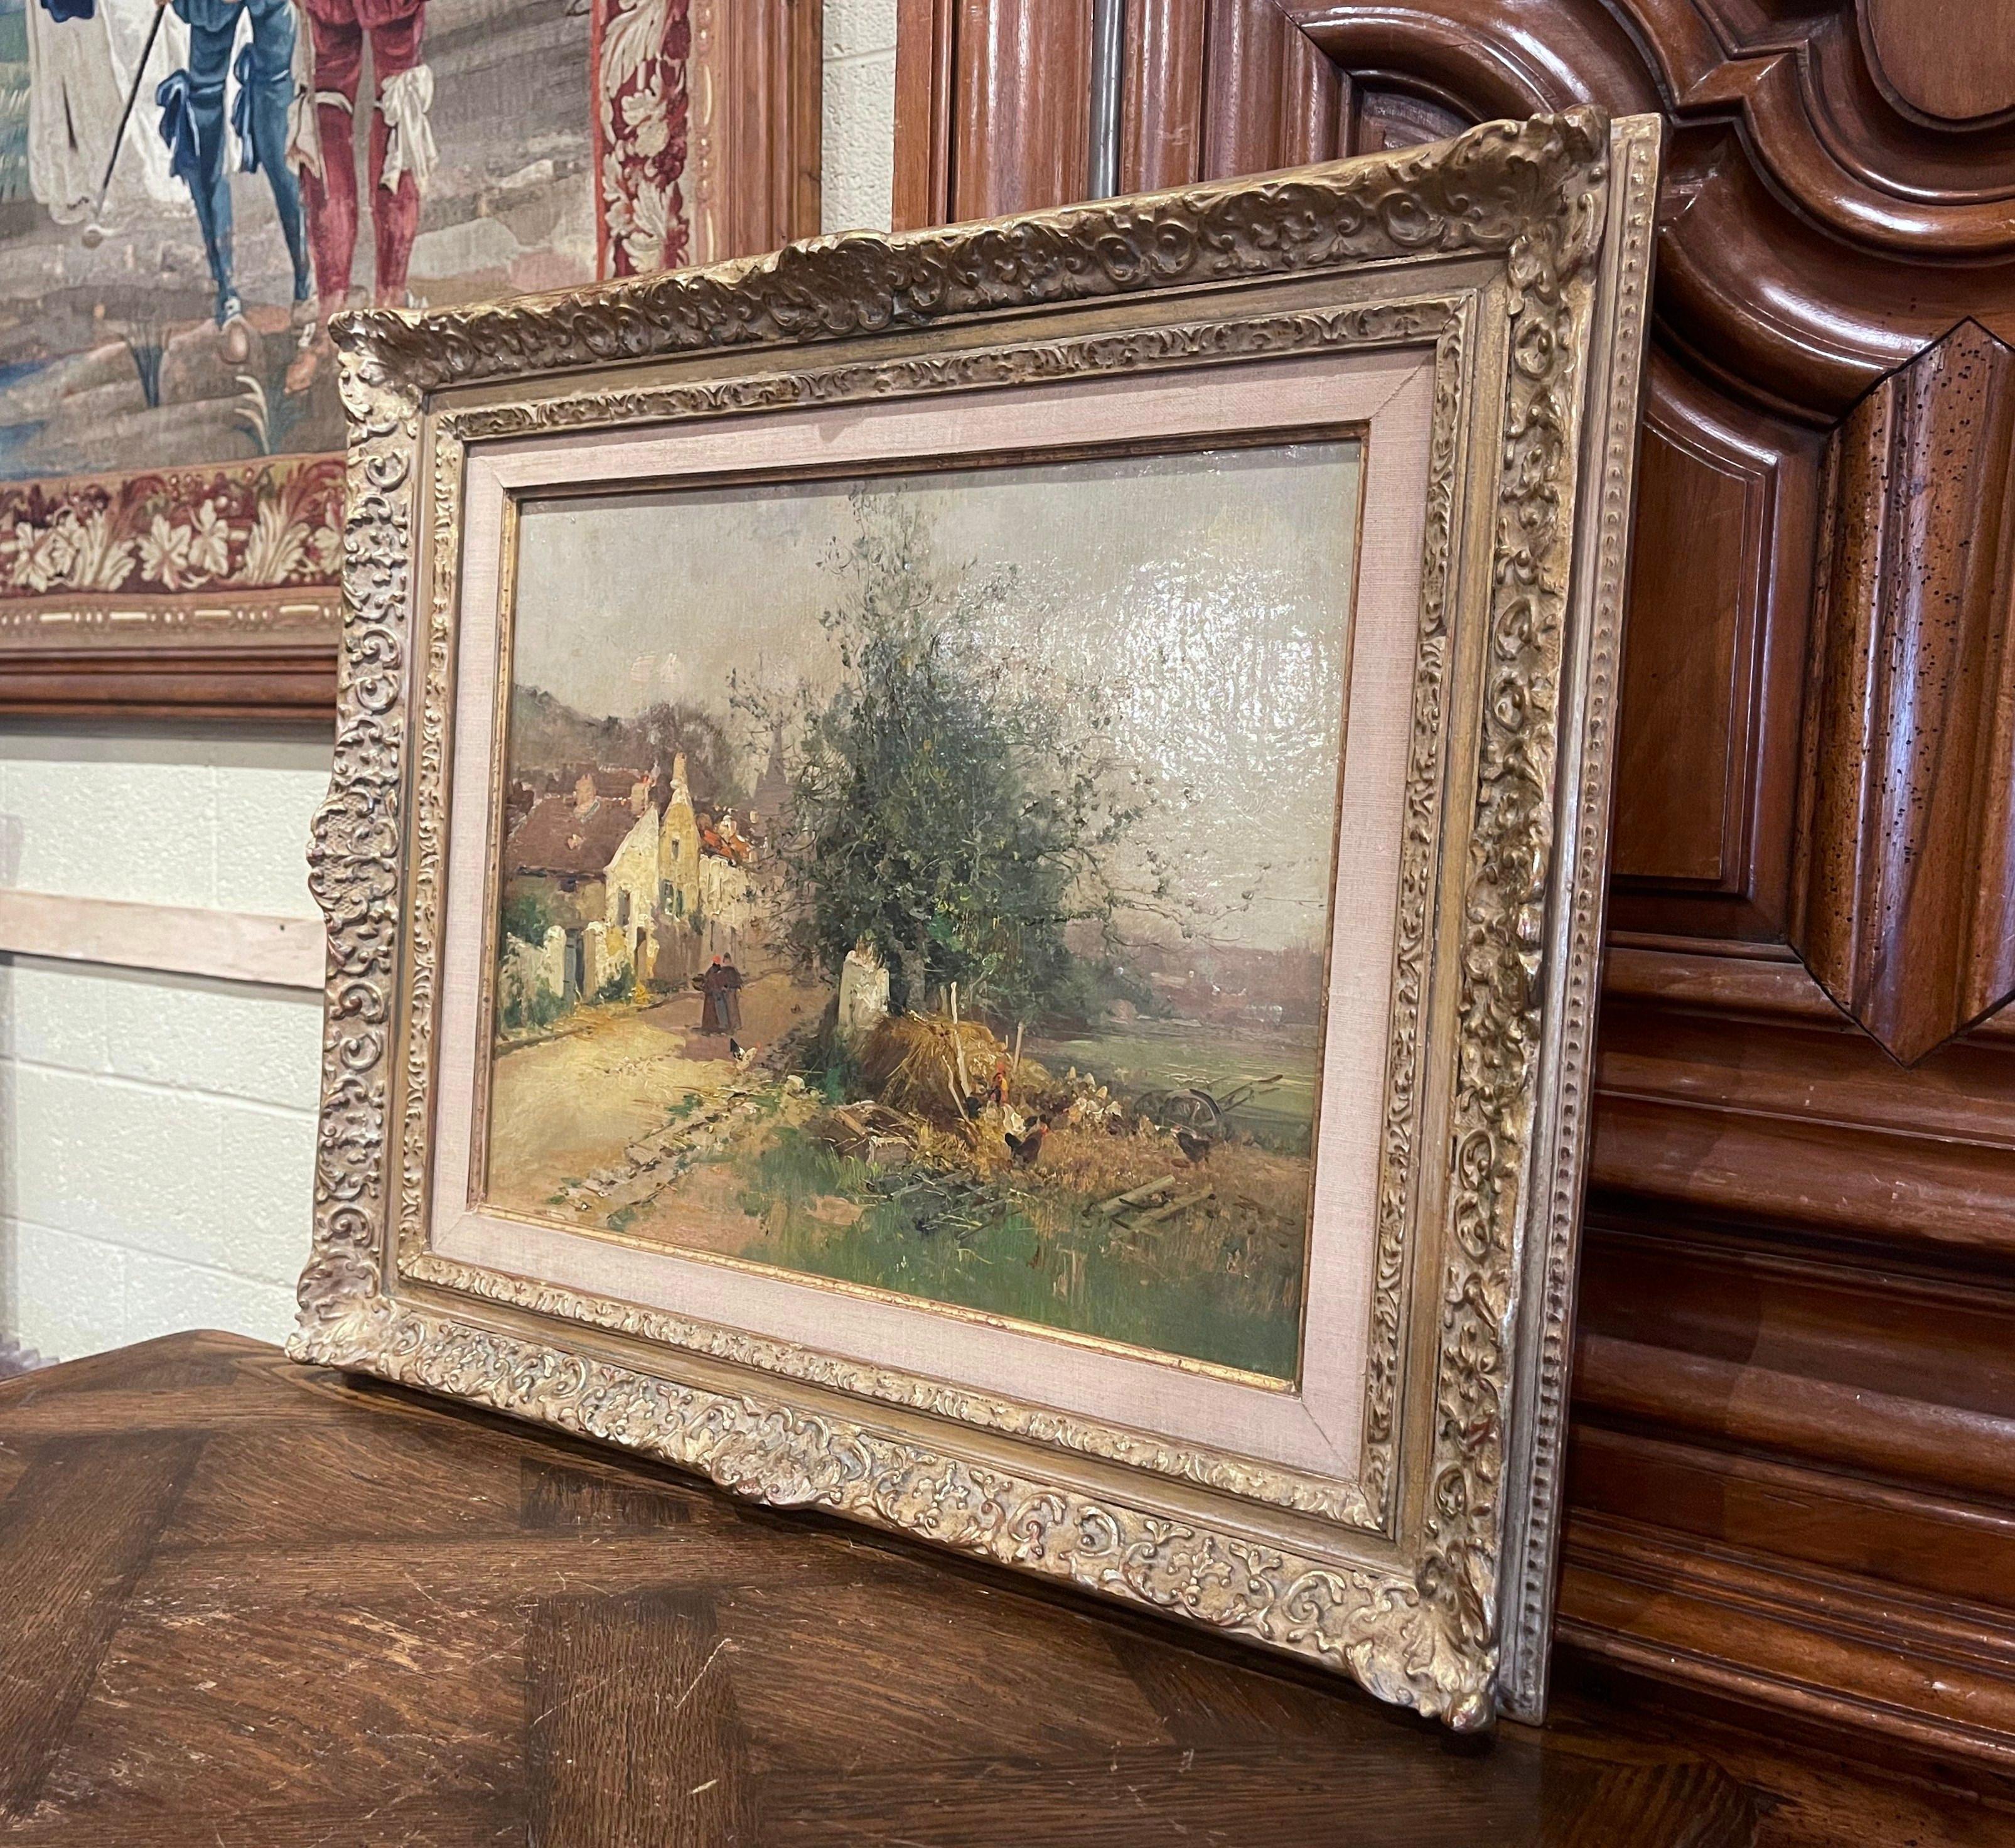 Cette peinture impressionniste du XIXe siècle a été réalisée en France, vers 1890. Placée dans un cadre en bois doré sculpté, l'œuvre d'art peinte sur toile illustre une scène pittoresque de paysage de campagne avec, au premier plan, des gens, des